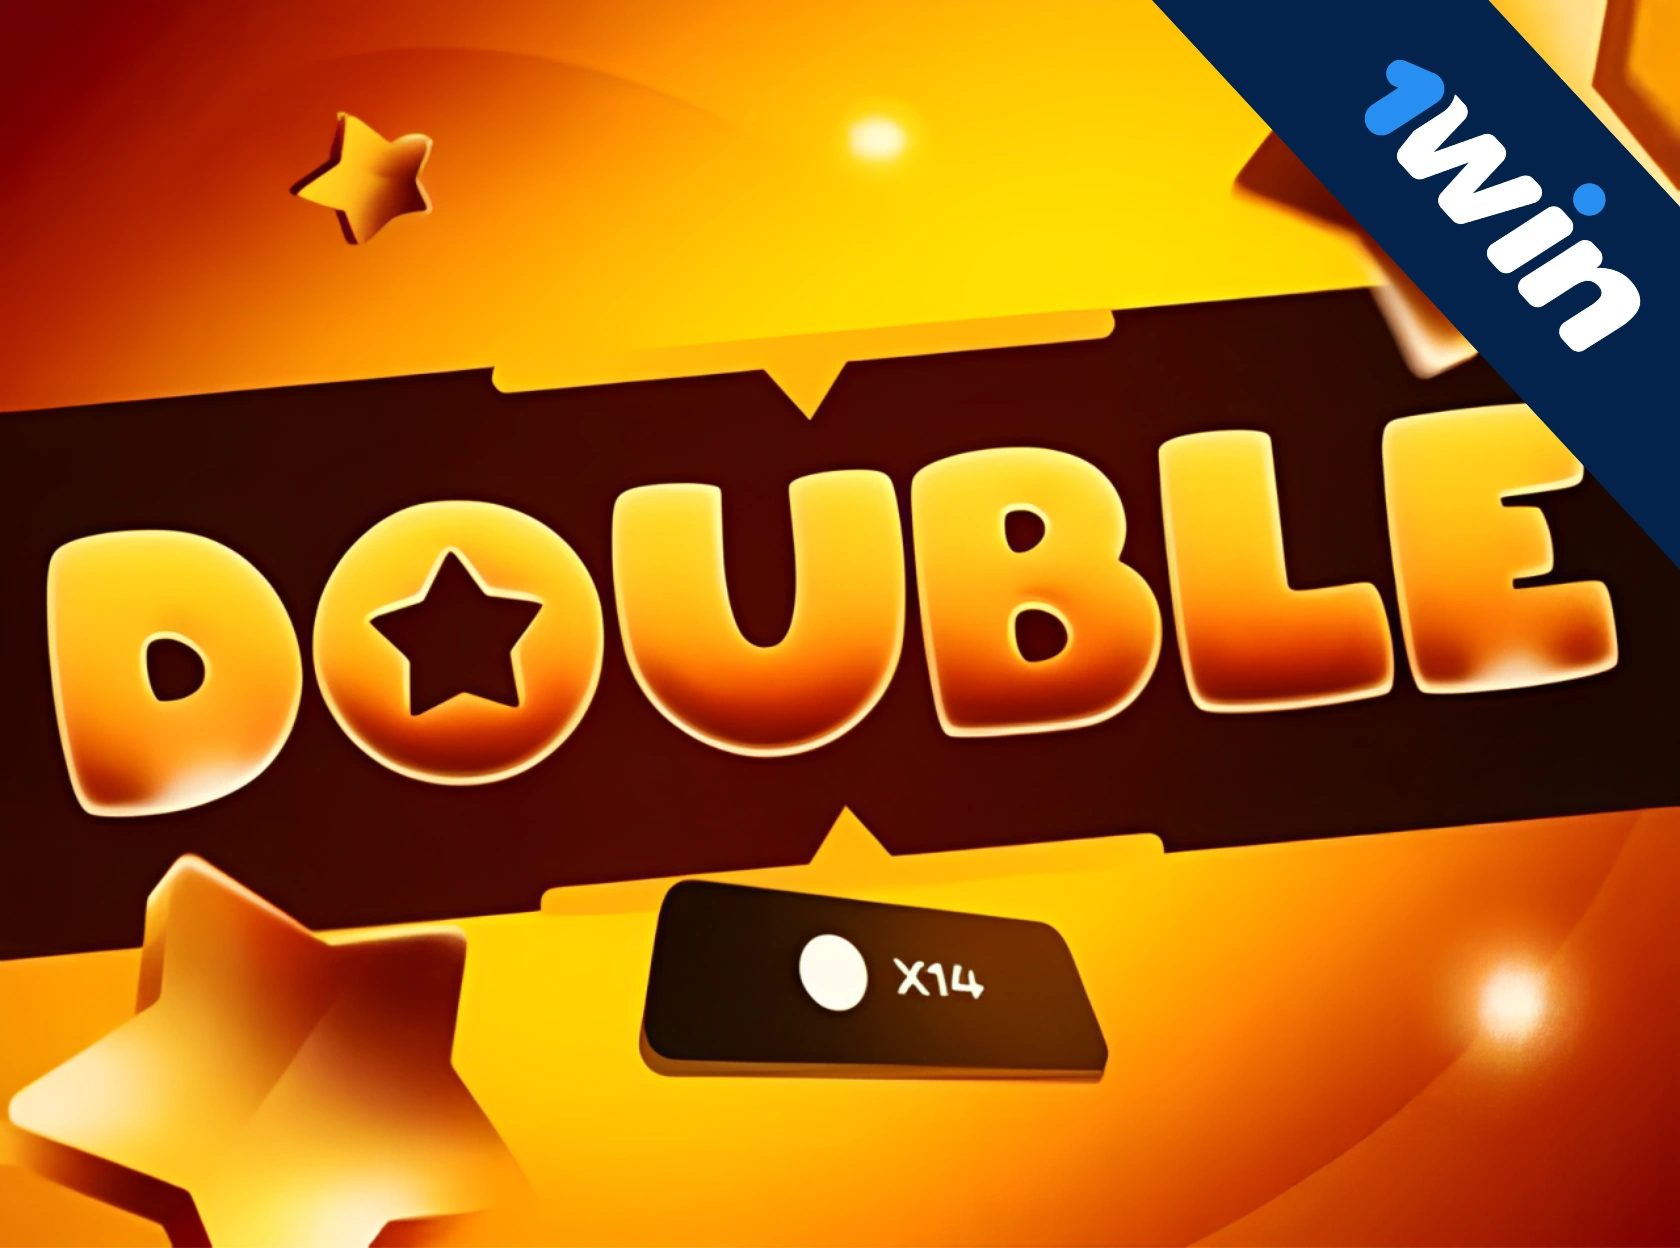 Double 1win é um novo jogo exclusivo!